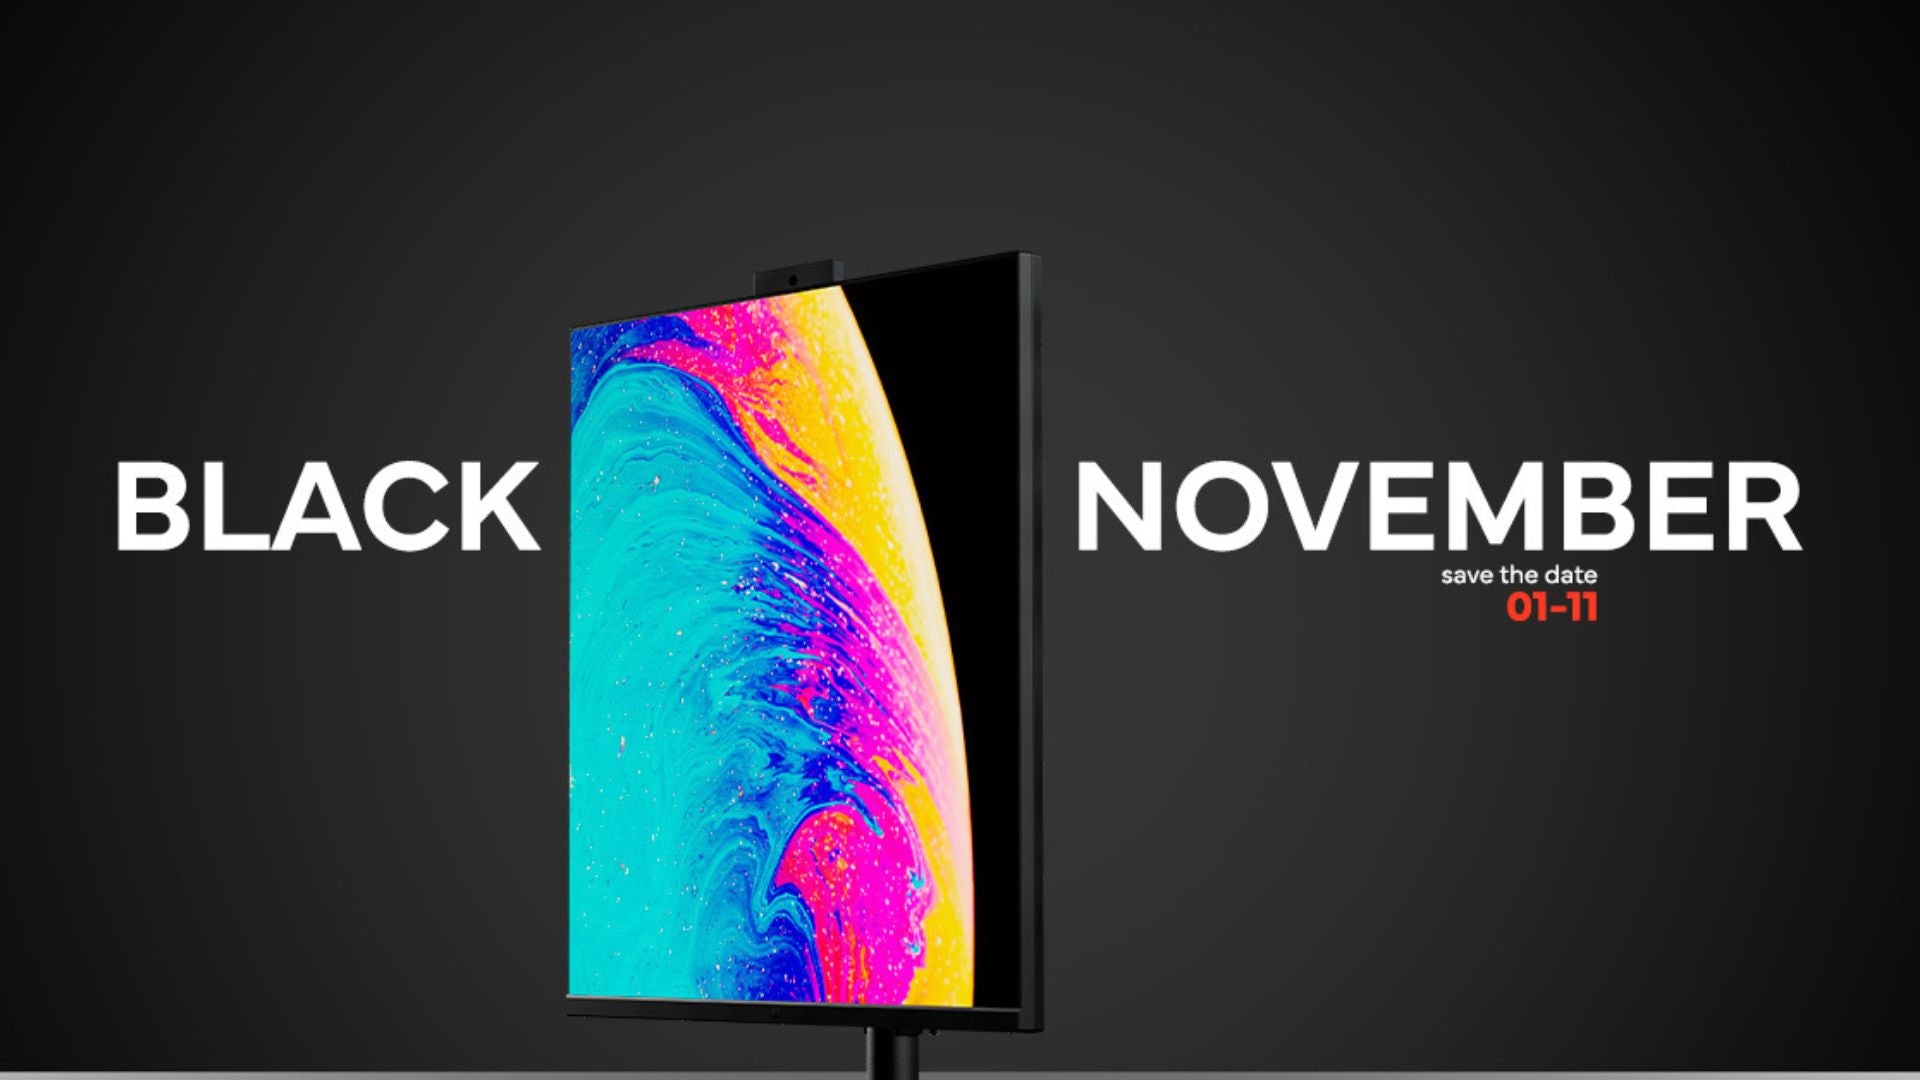 Imagem de fundo escuro, um monitor colorido ao centro e as palavras "black november".